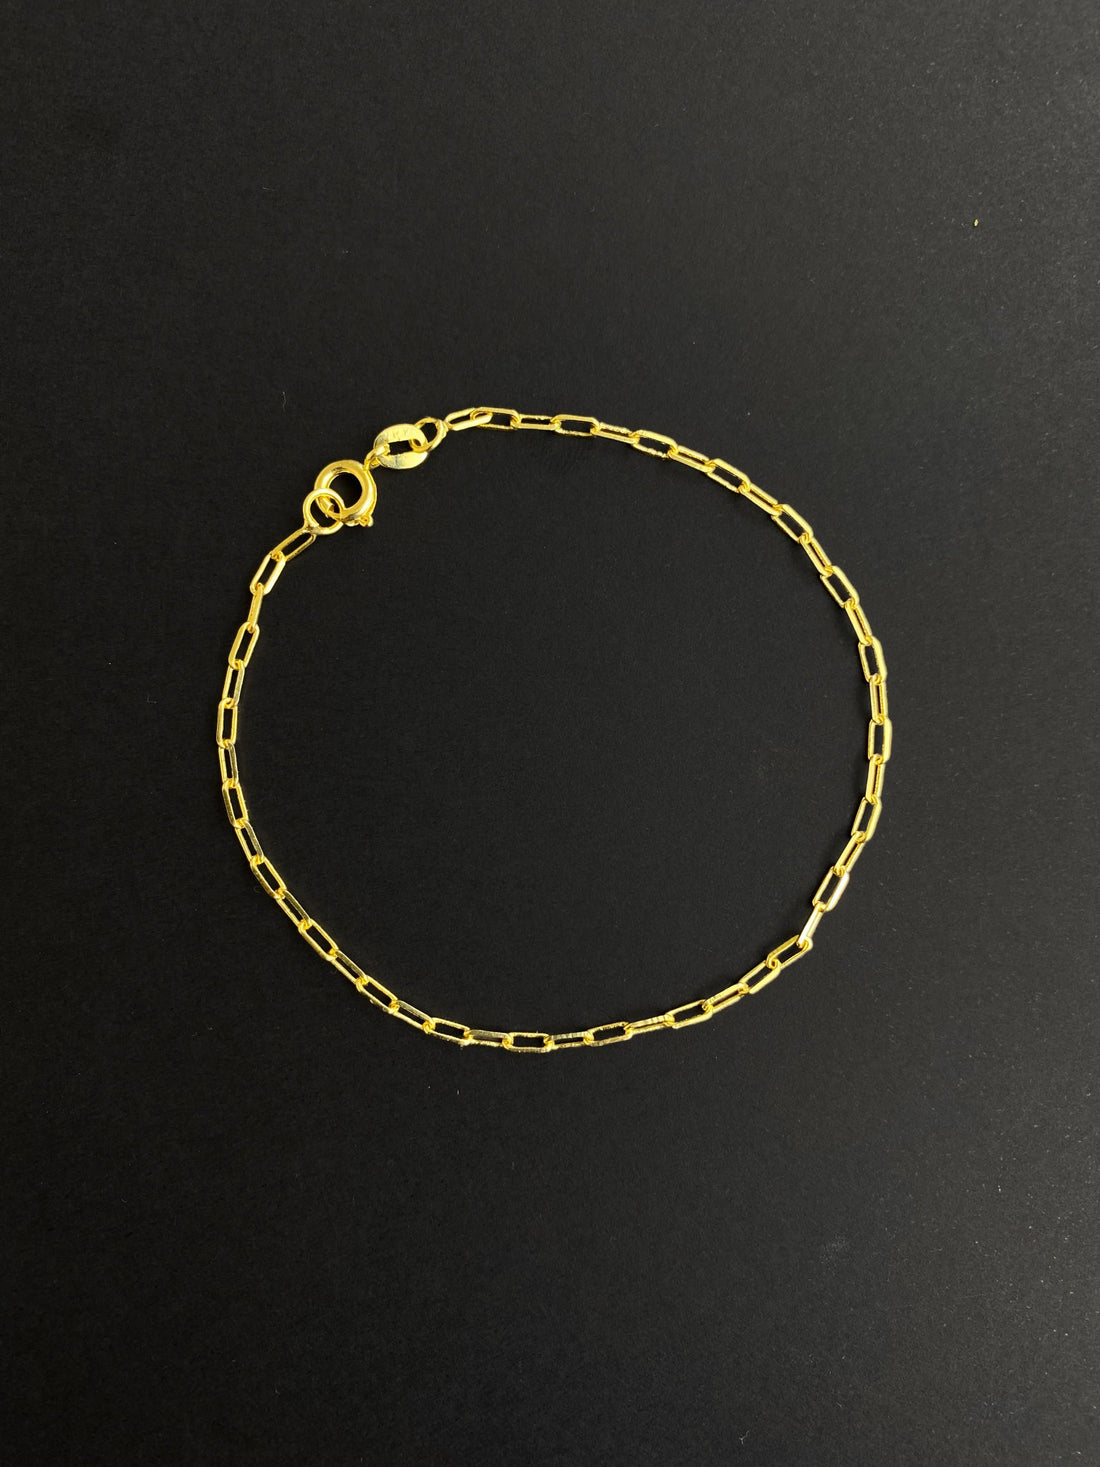 Pulseira Cartie Boia (1mm) - 1,3g - 19cm - Banhada A Ouro 18k (6914003435700)